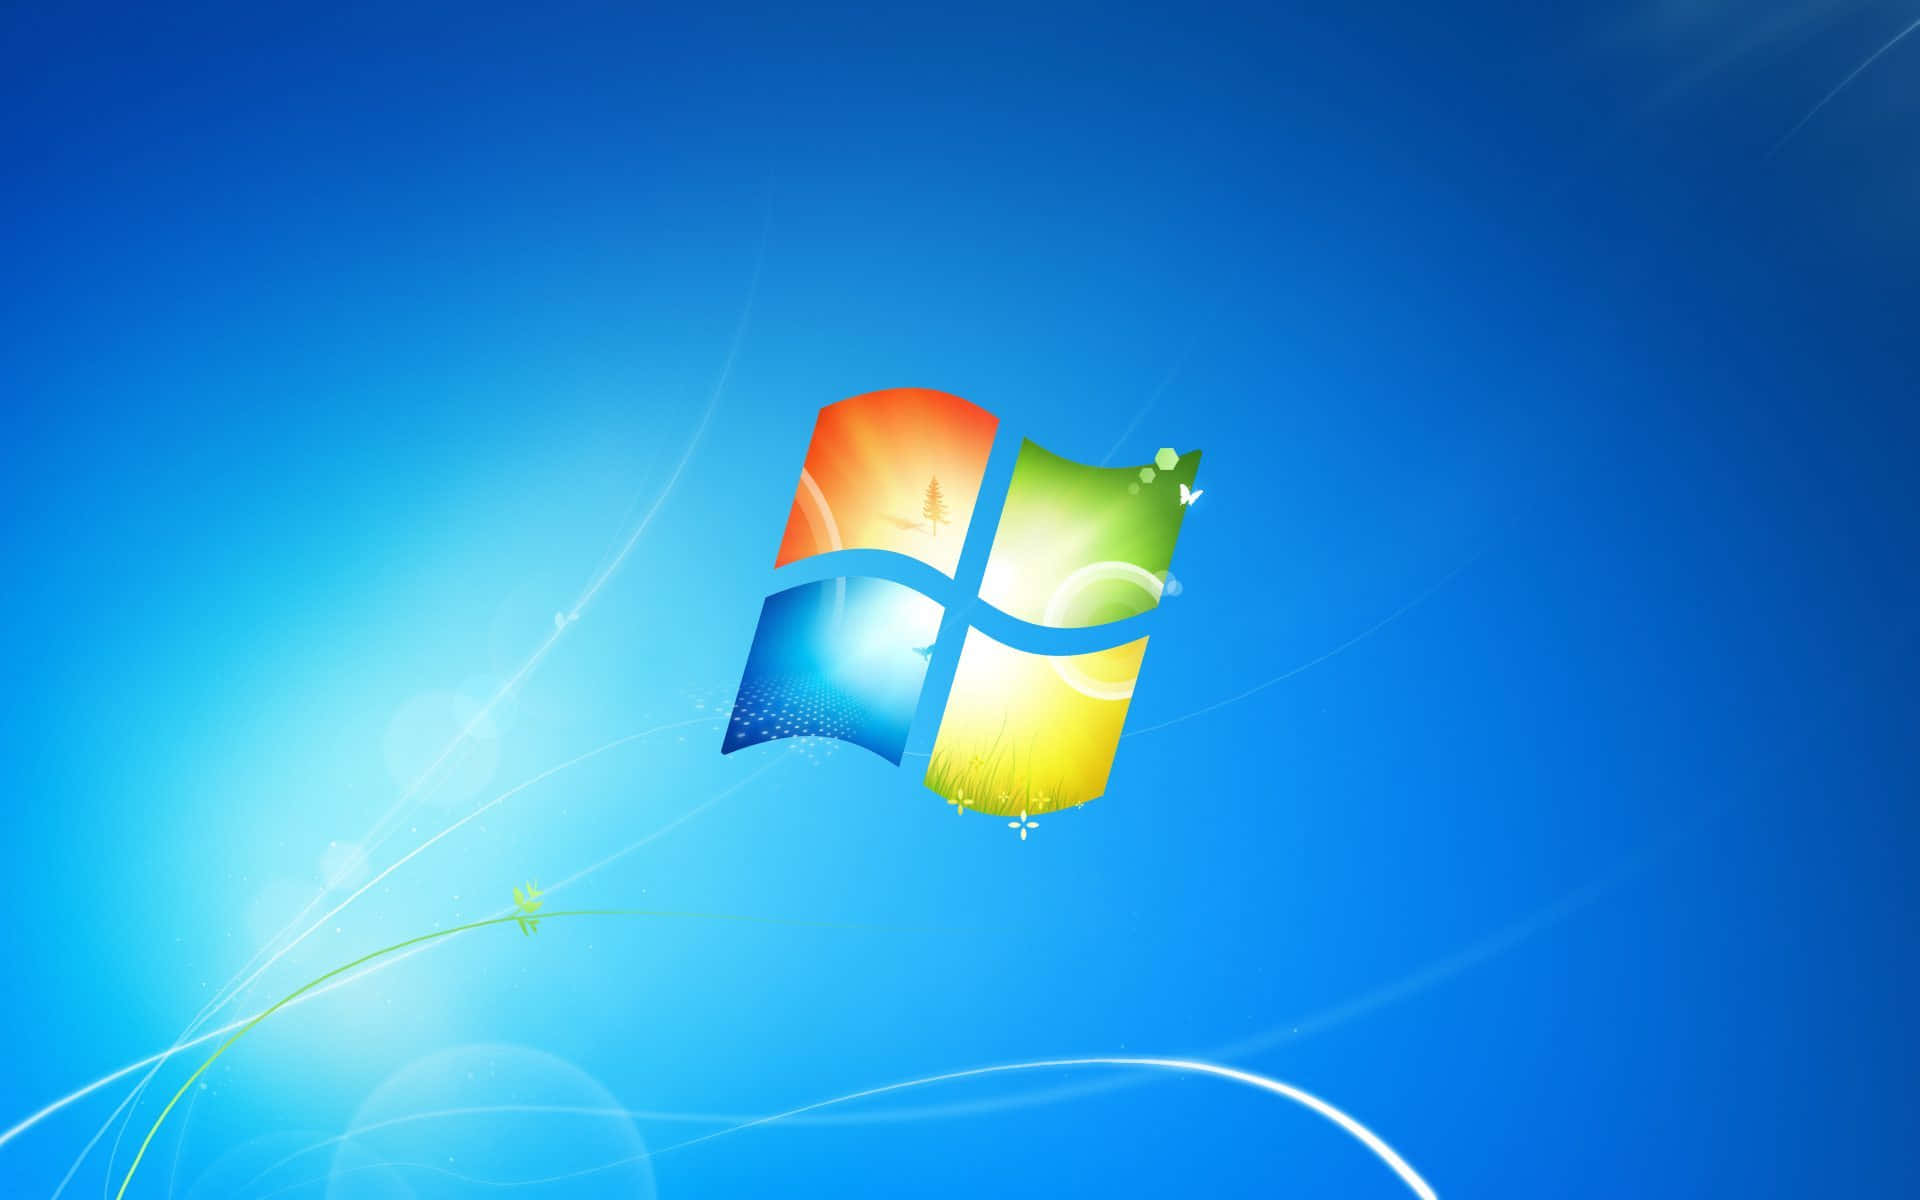 Windows7 - Installazione Degli Aggiornamenti, Lavorare Su Più Dispositivi